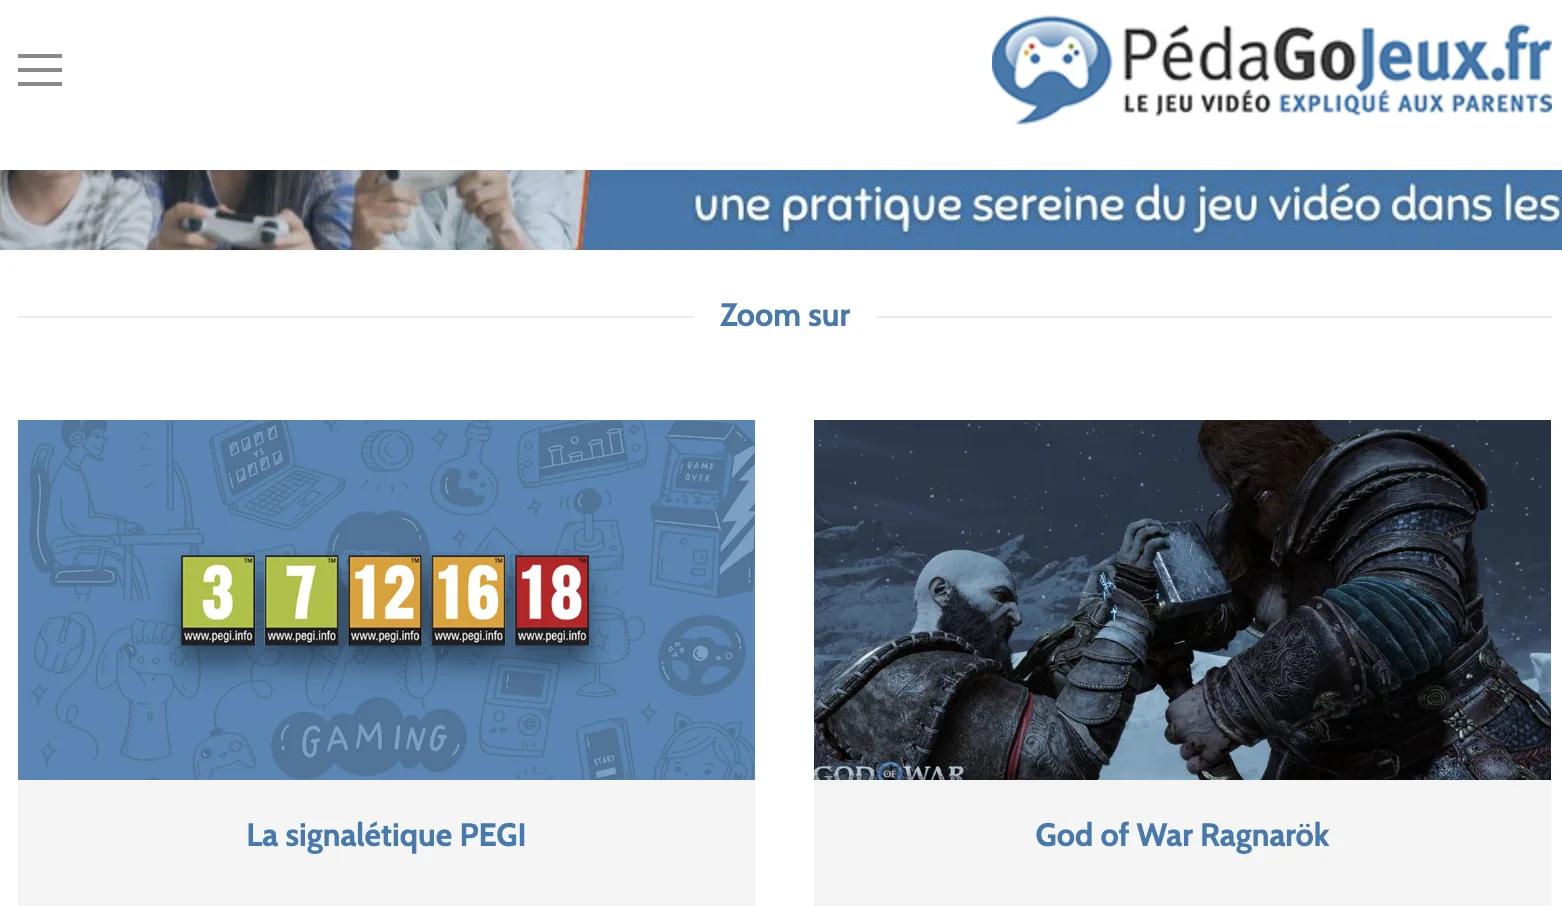 www.pedagojeux.fr/